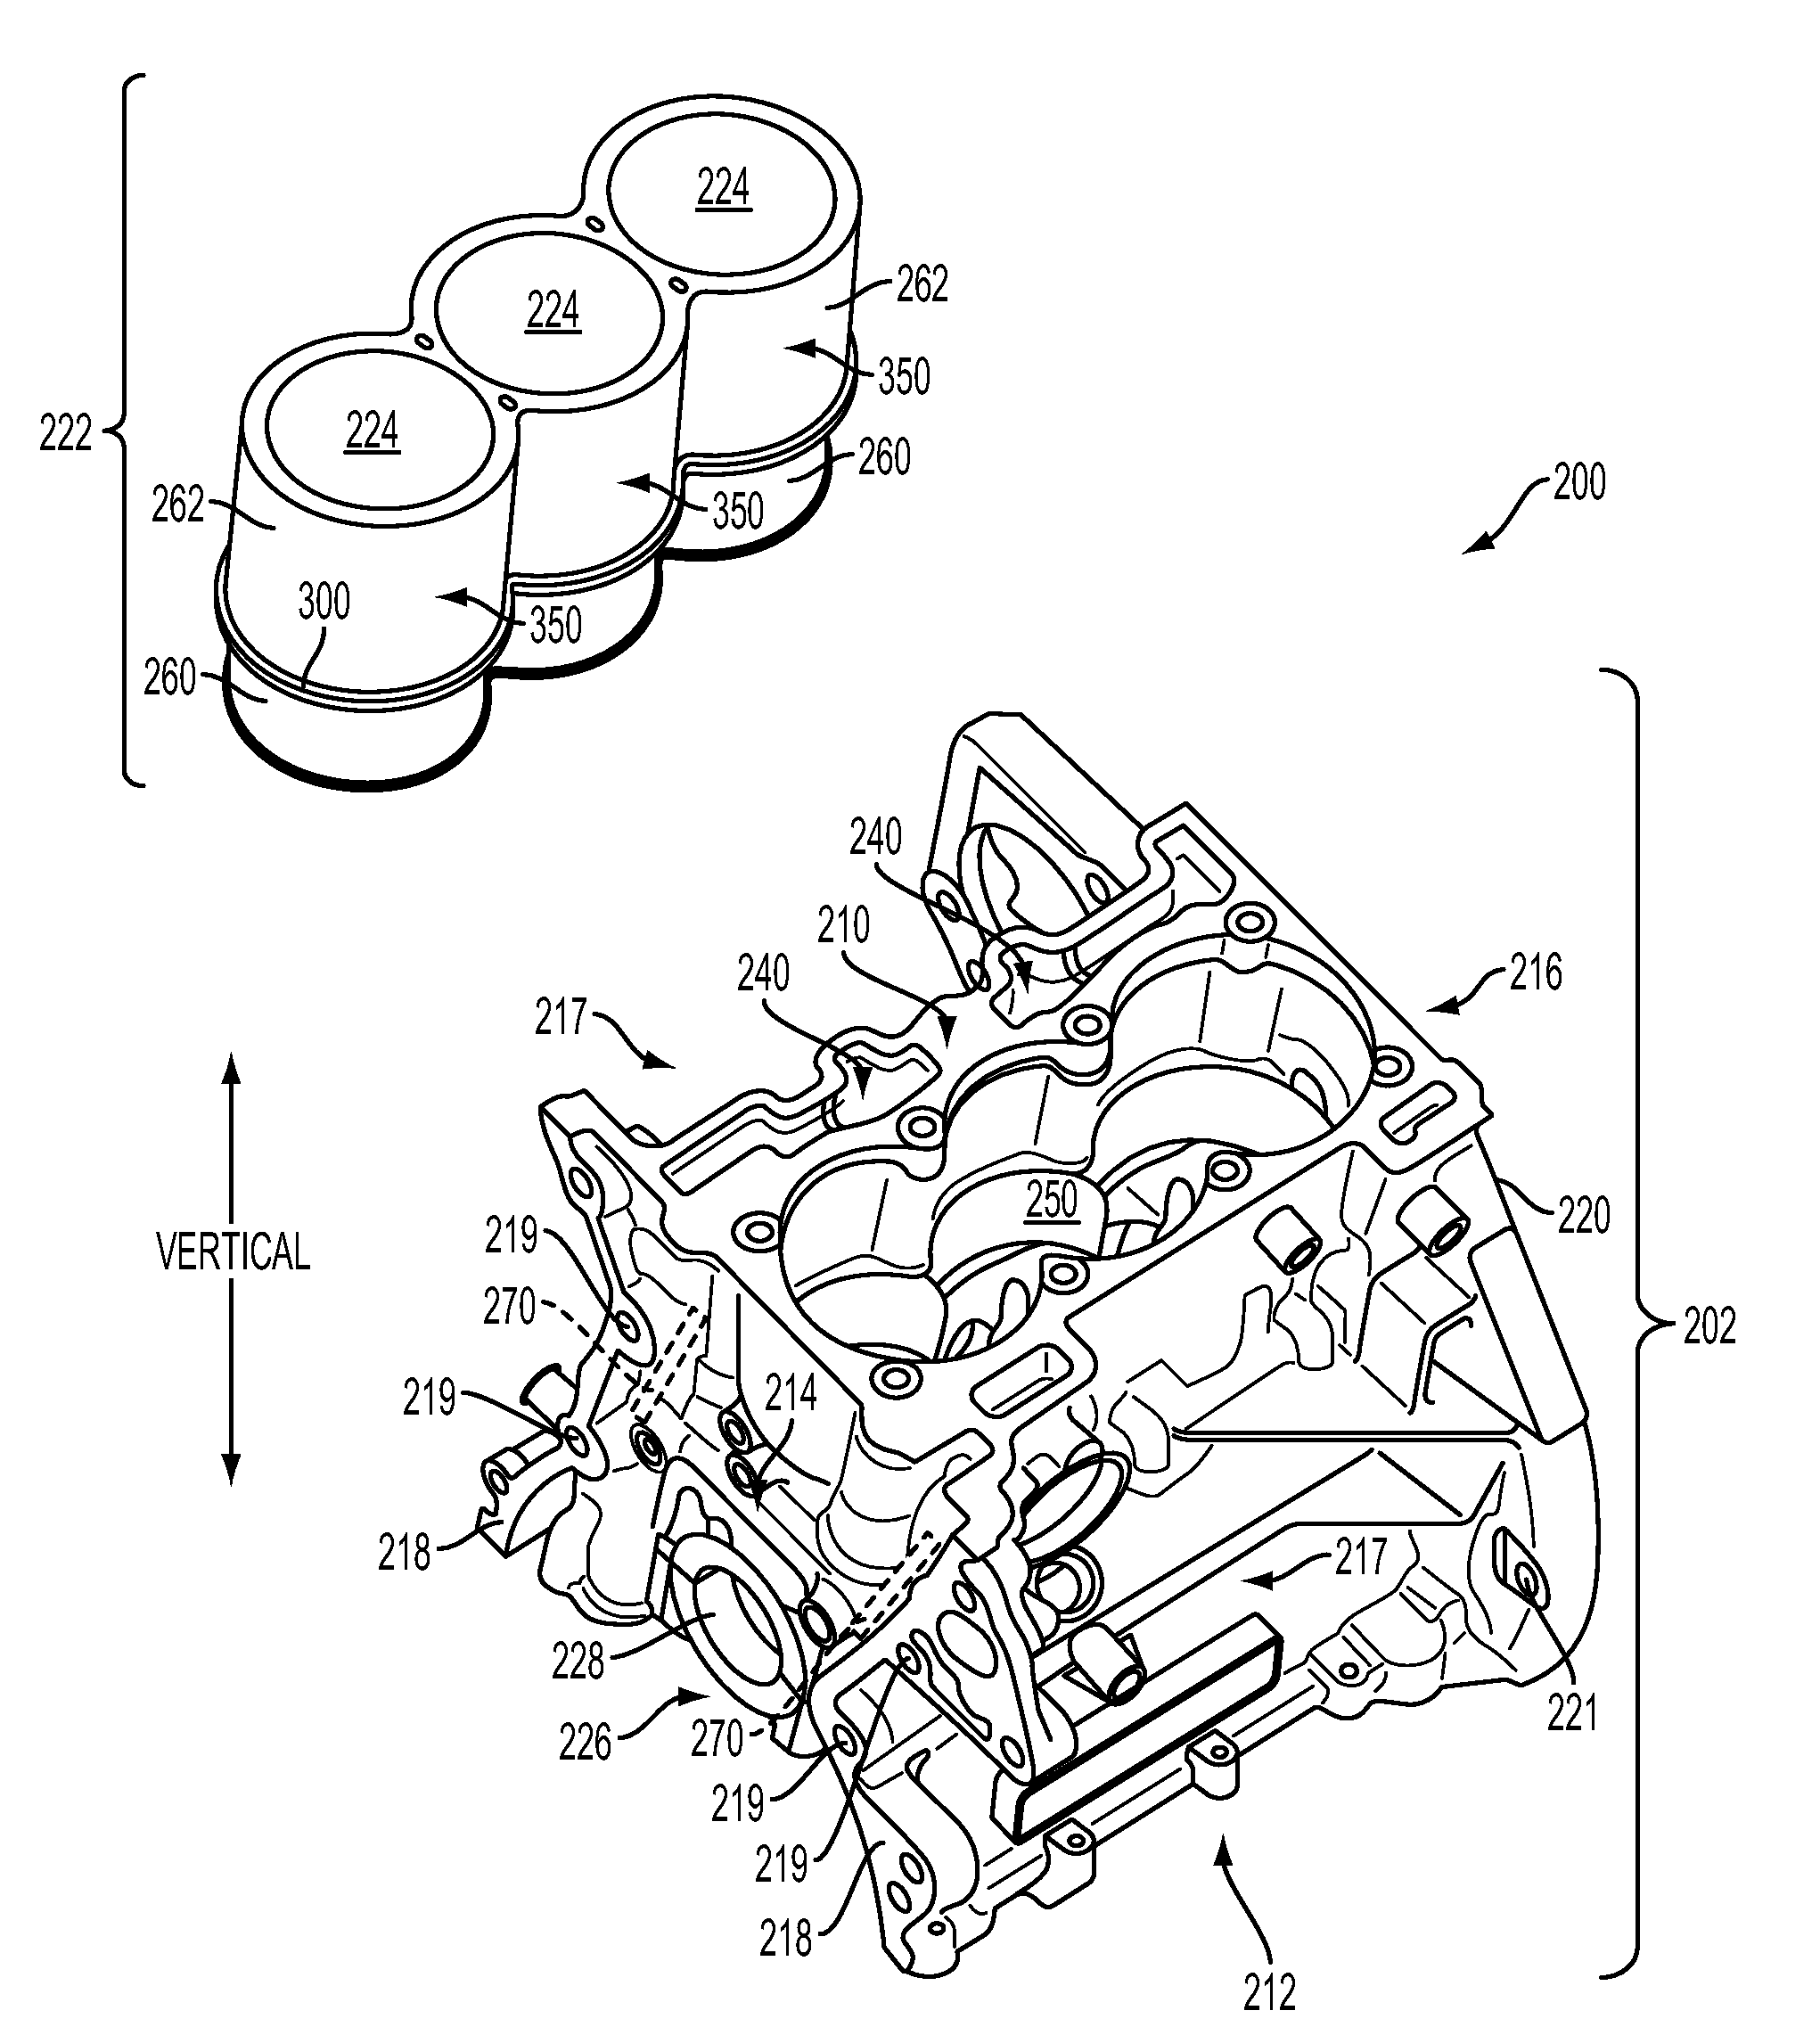 Engine having composite cylinder block